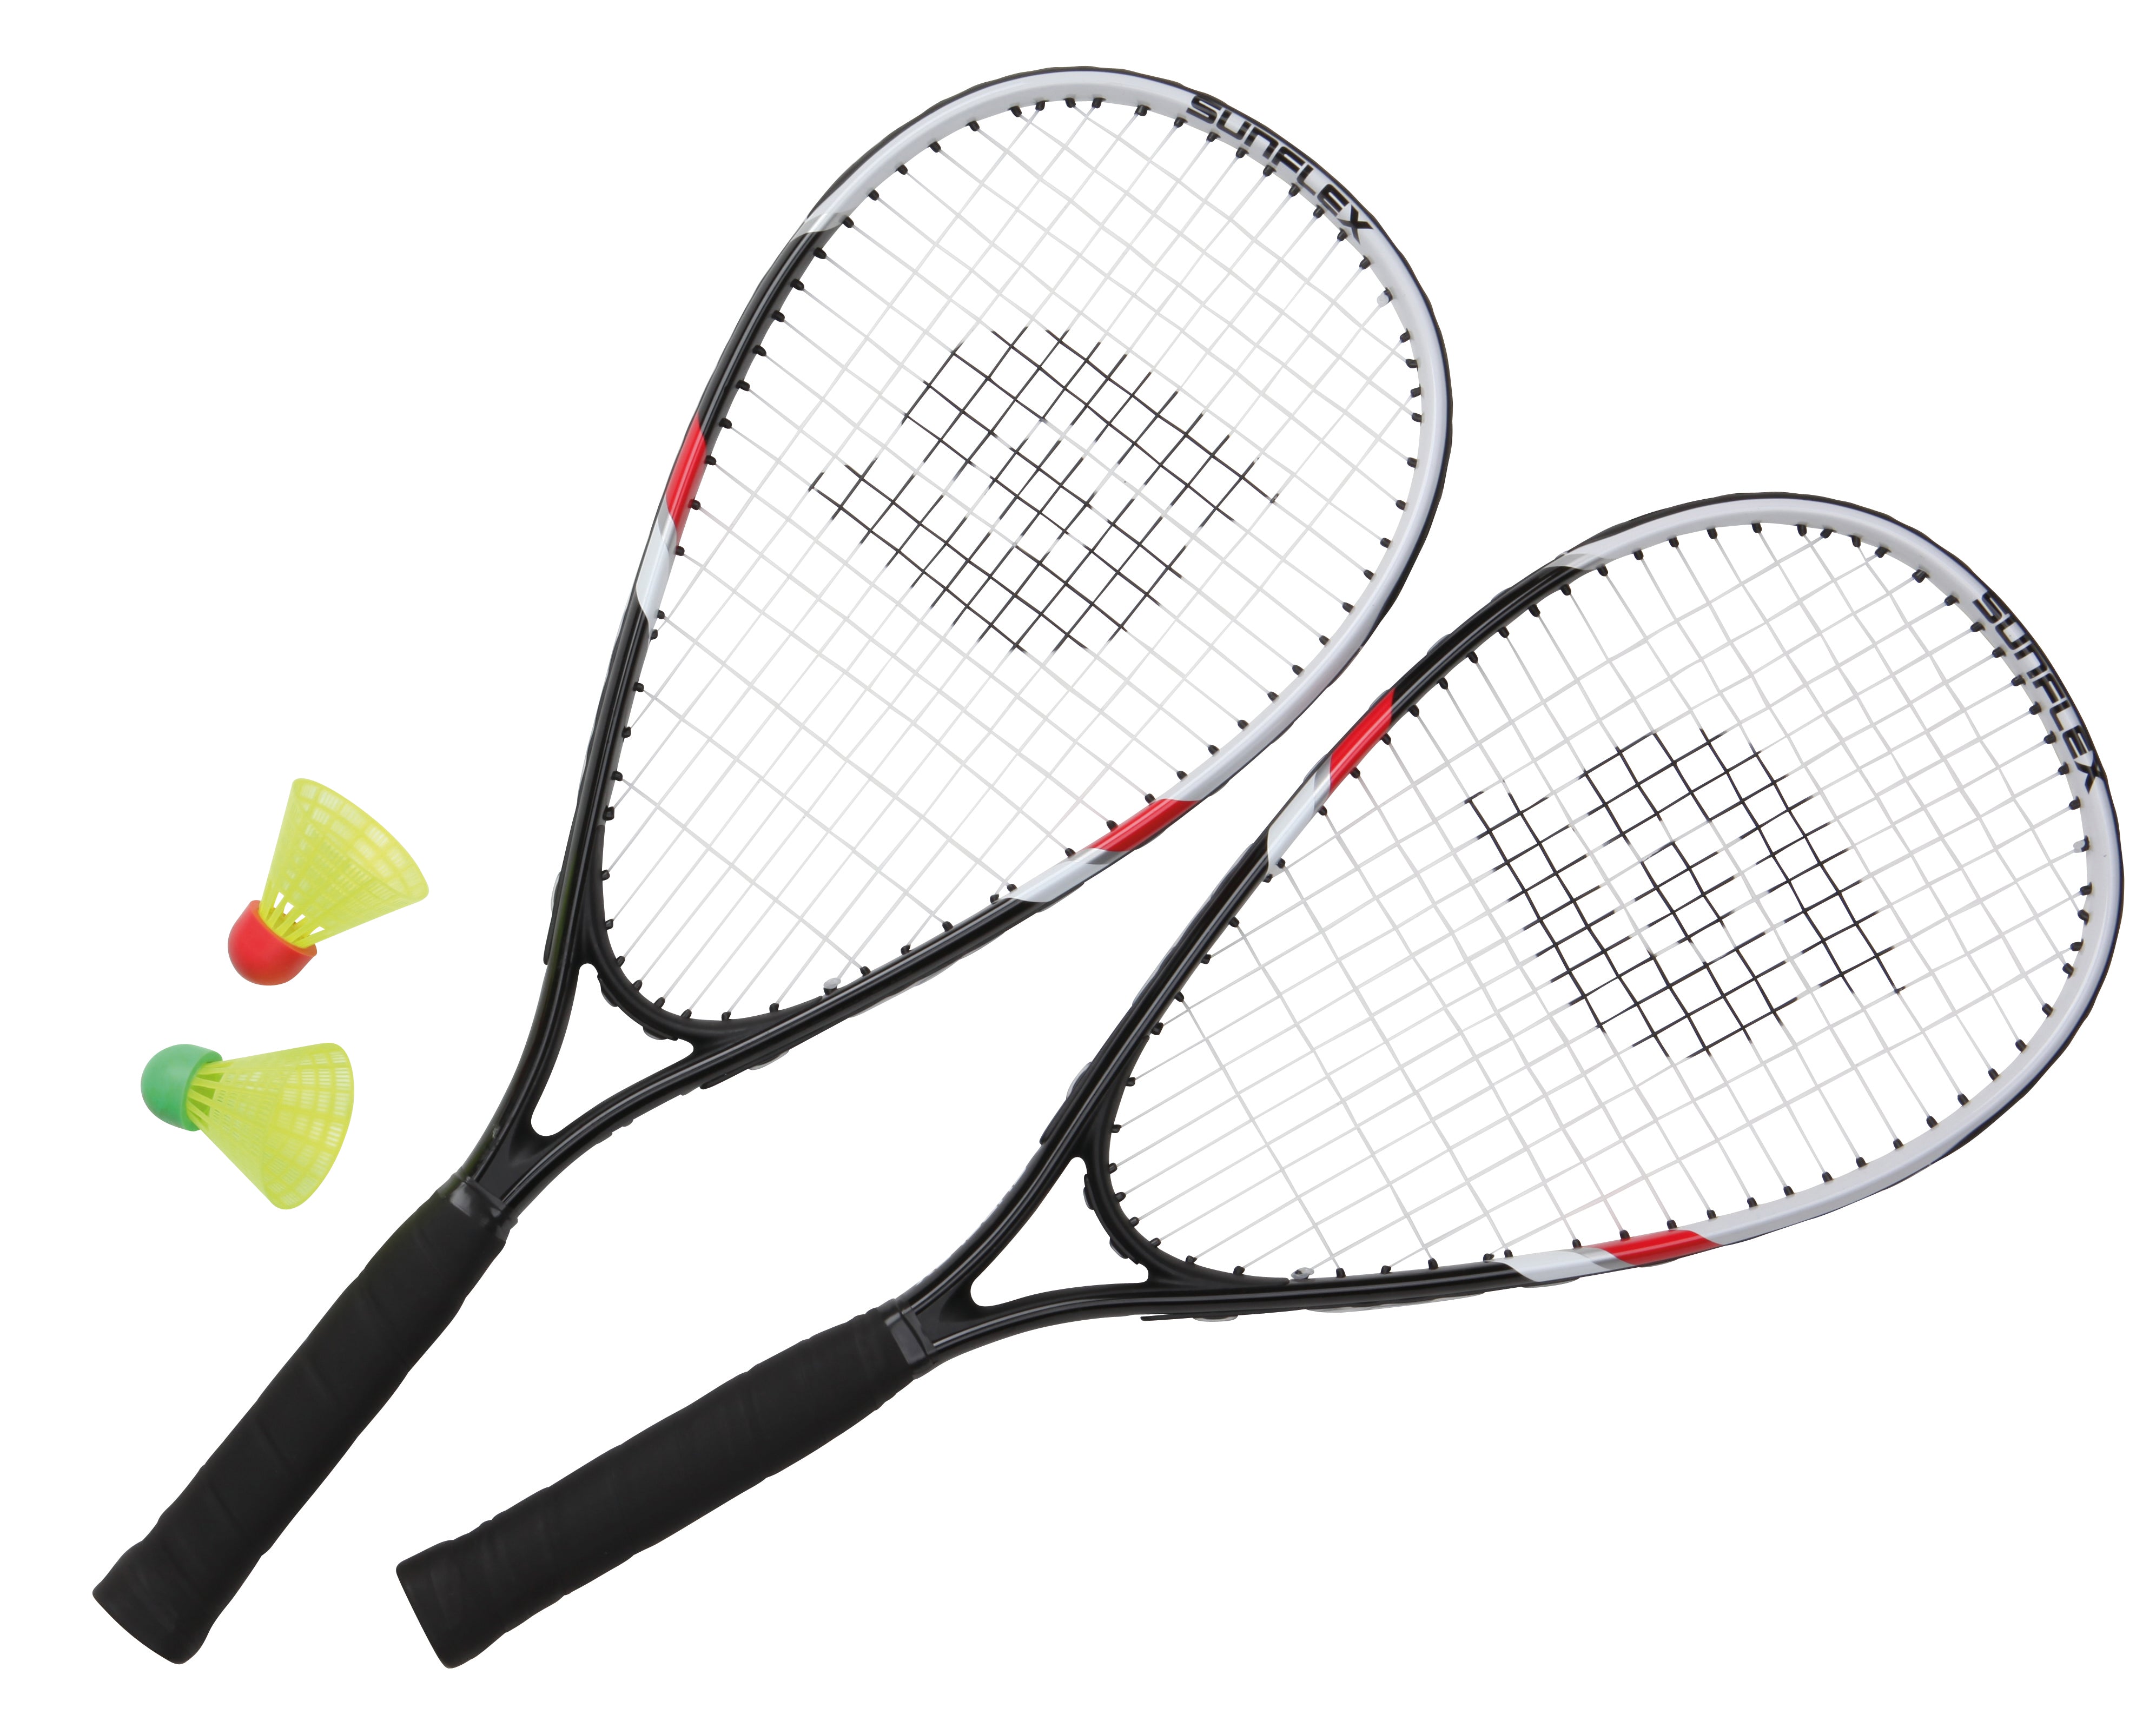 raqueta badminton b500